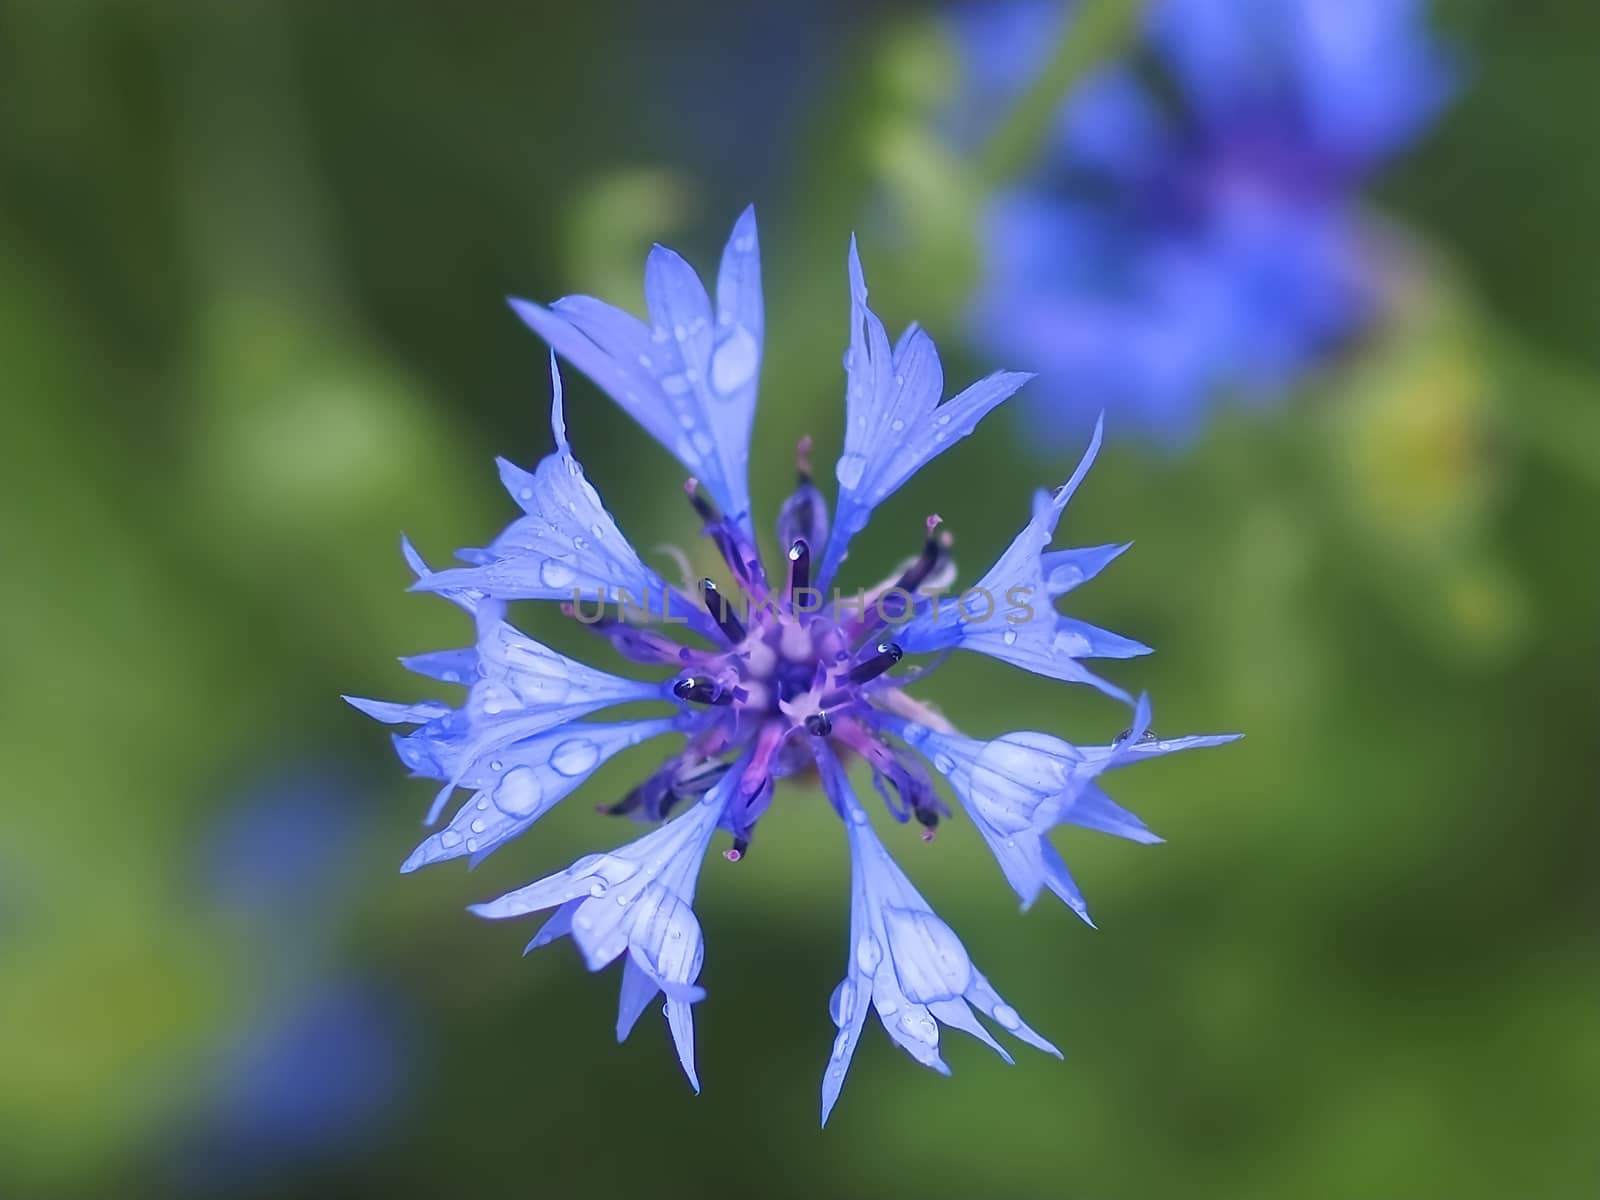 Macro of a blue cornflower with rain drops by Stimmungsbilder